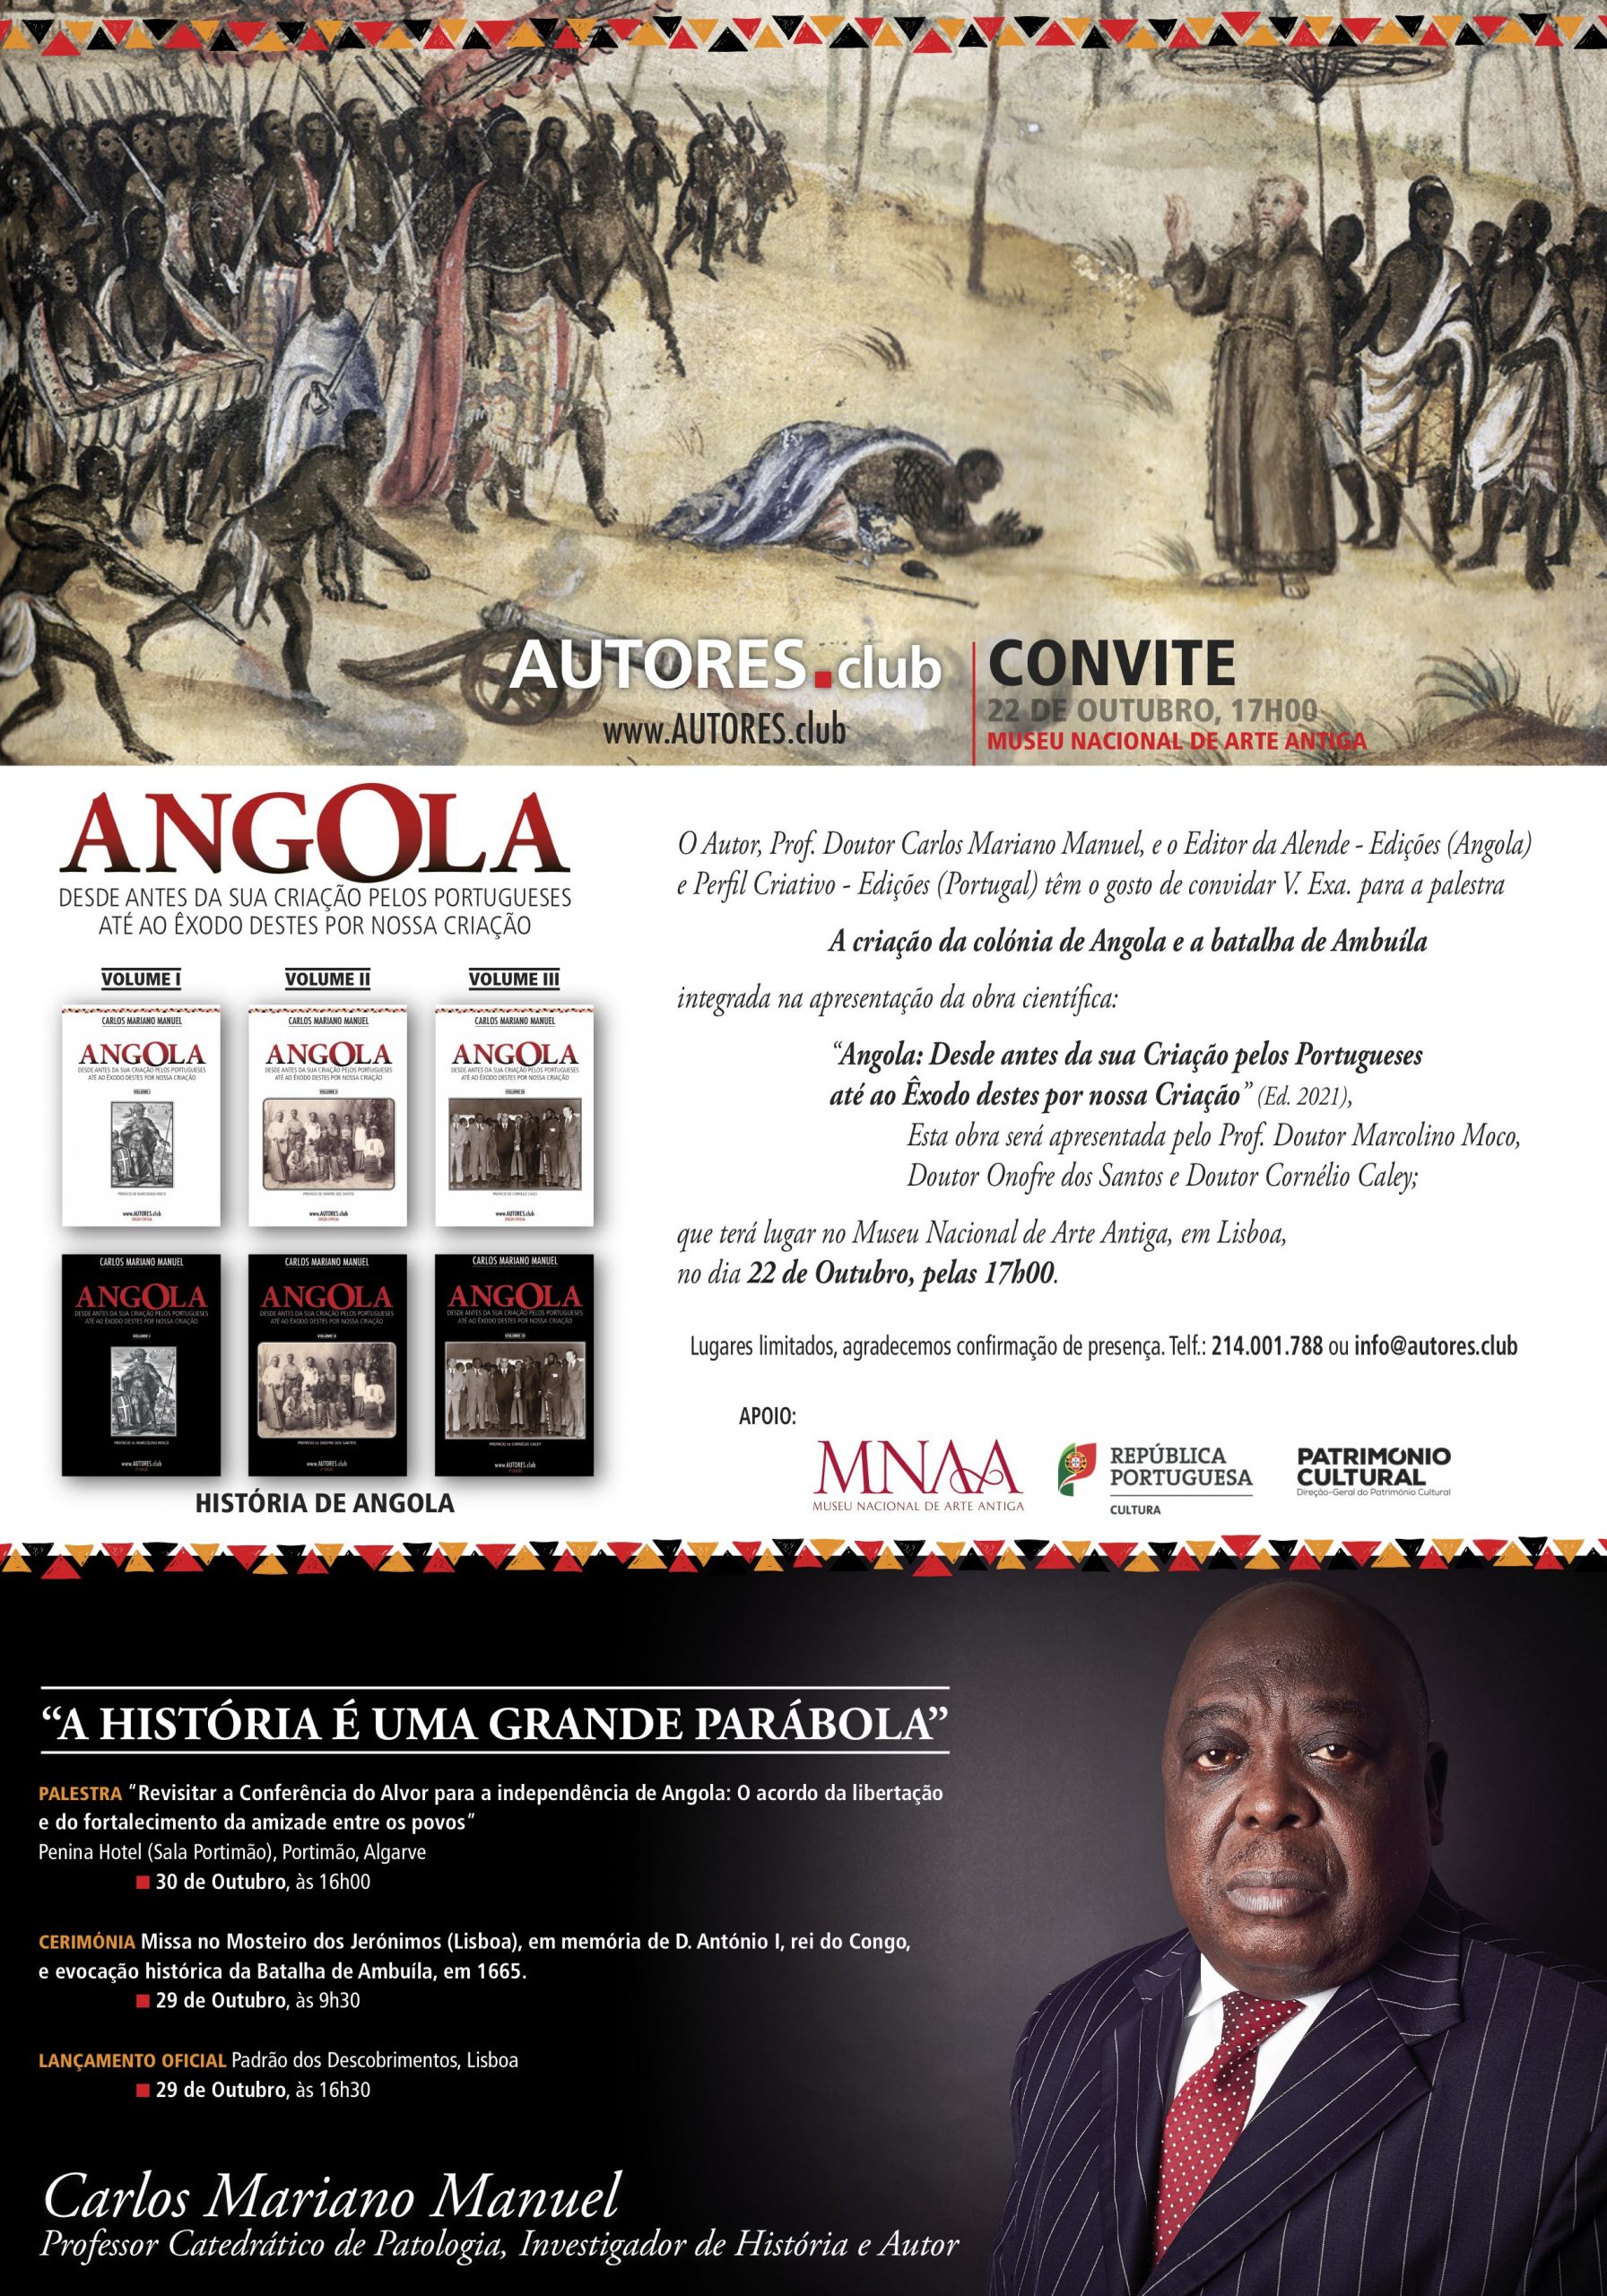 Palestra “A criação da Colónia de Angola e a batalha de Ambuíla” antecipada para as 17h00